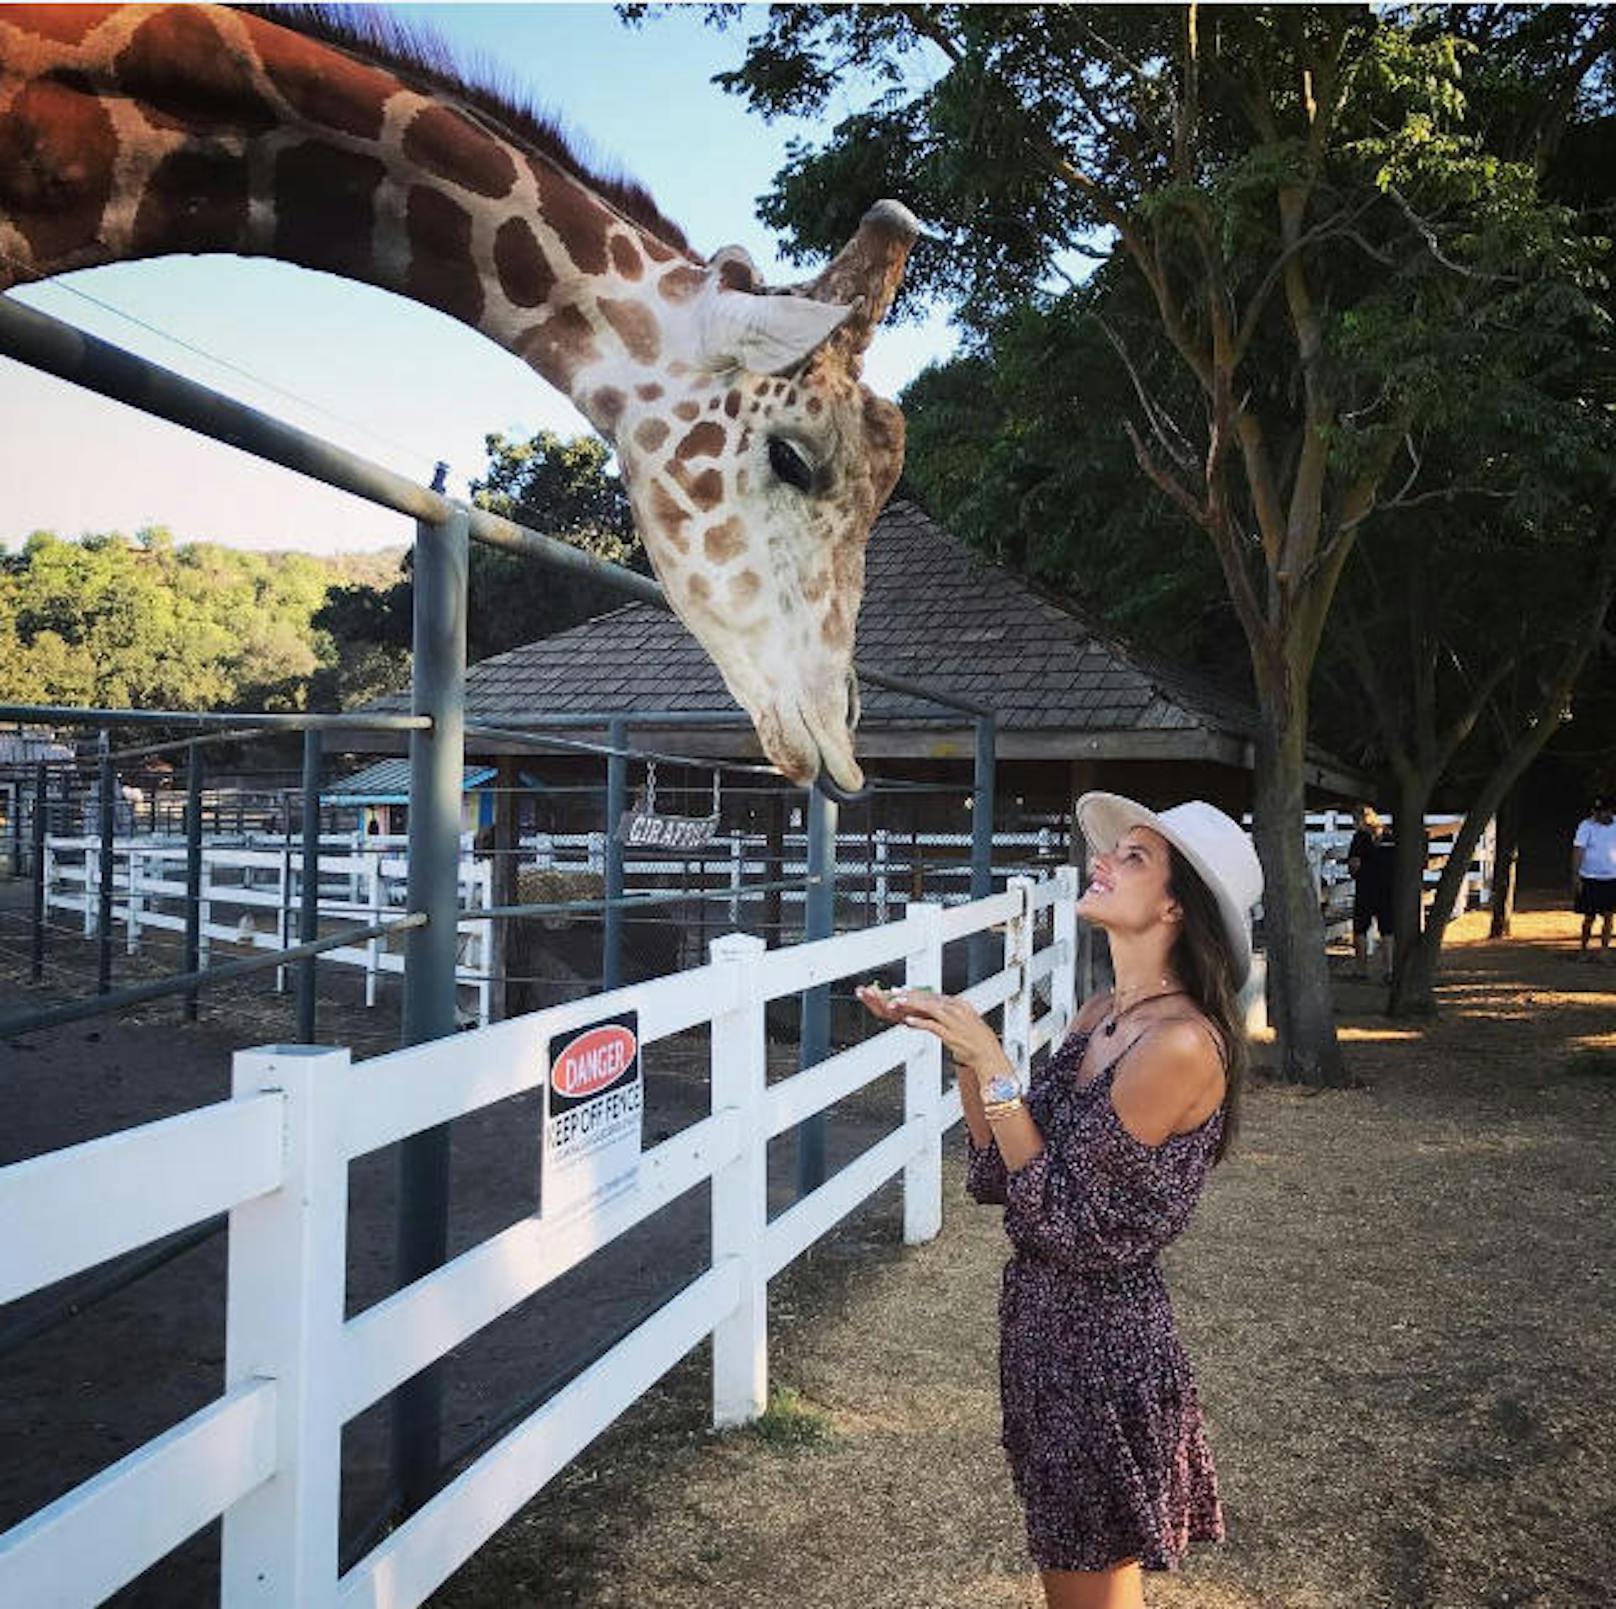 09.08.2017: Model Alessandra Ambrosio hat eine Safari-Tour in Malibu unternommen - und dabei eine neue Bekanntschaft gemacht: Stanley, die Giraffe. "Der Süßeste", schreibt sie zum lustigen Schnappschuss.